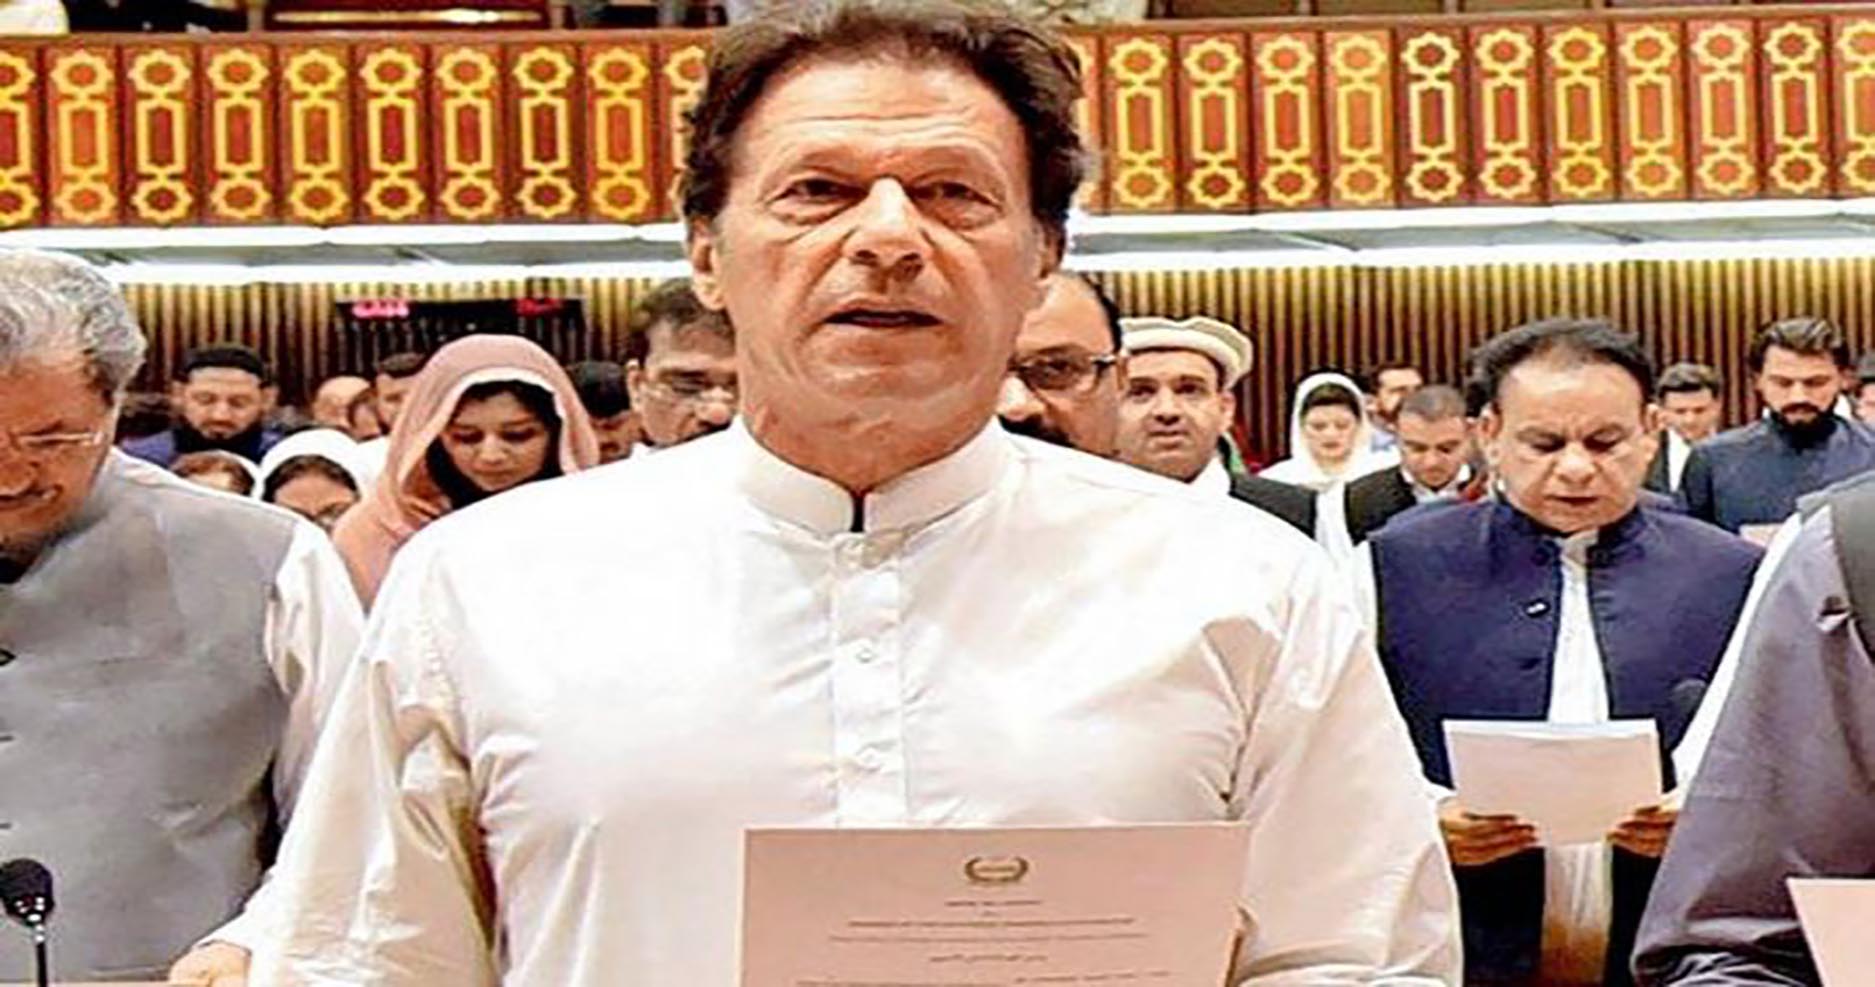 “Imran Khan sworn in as 22nd premier of Pakistan”